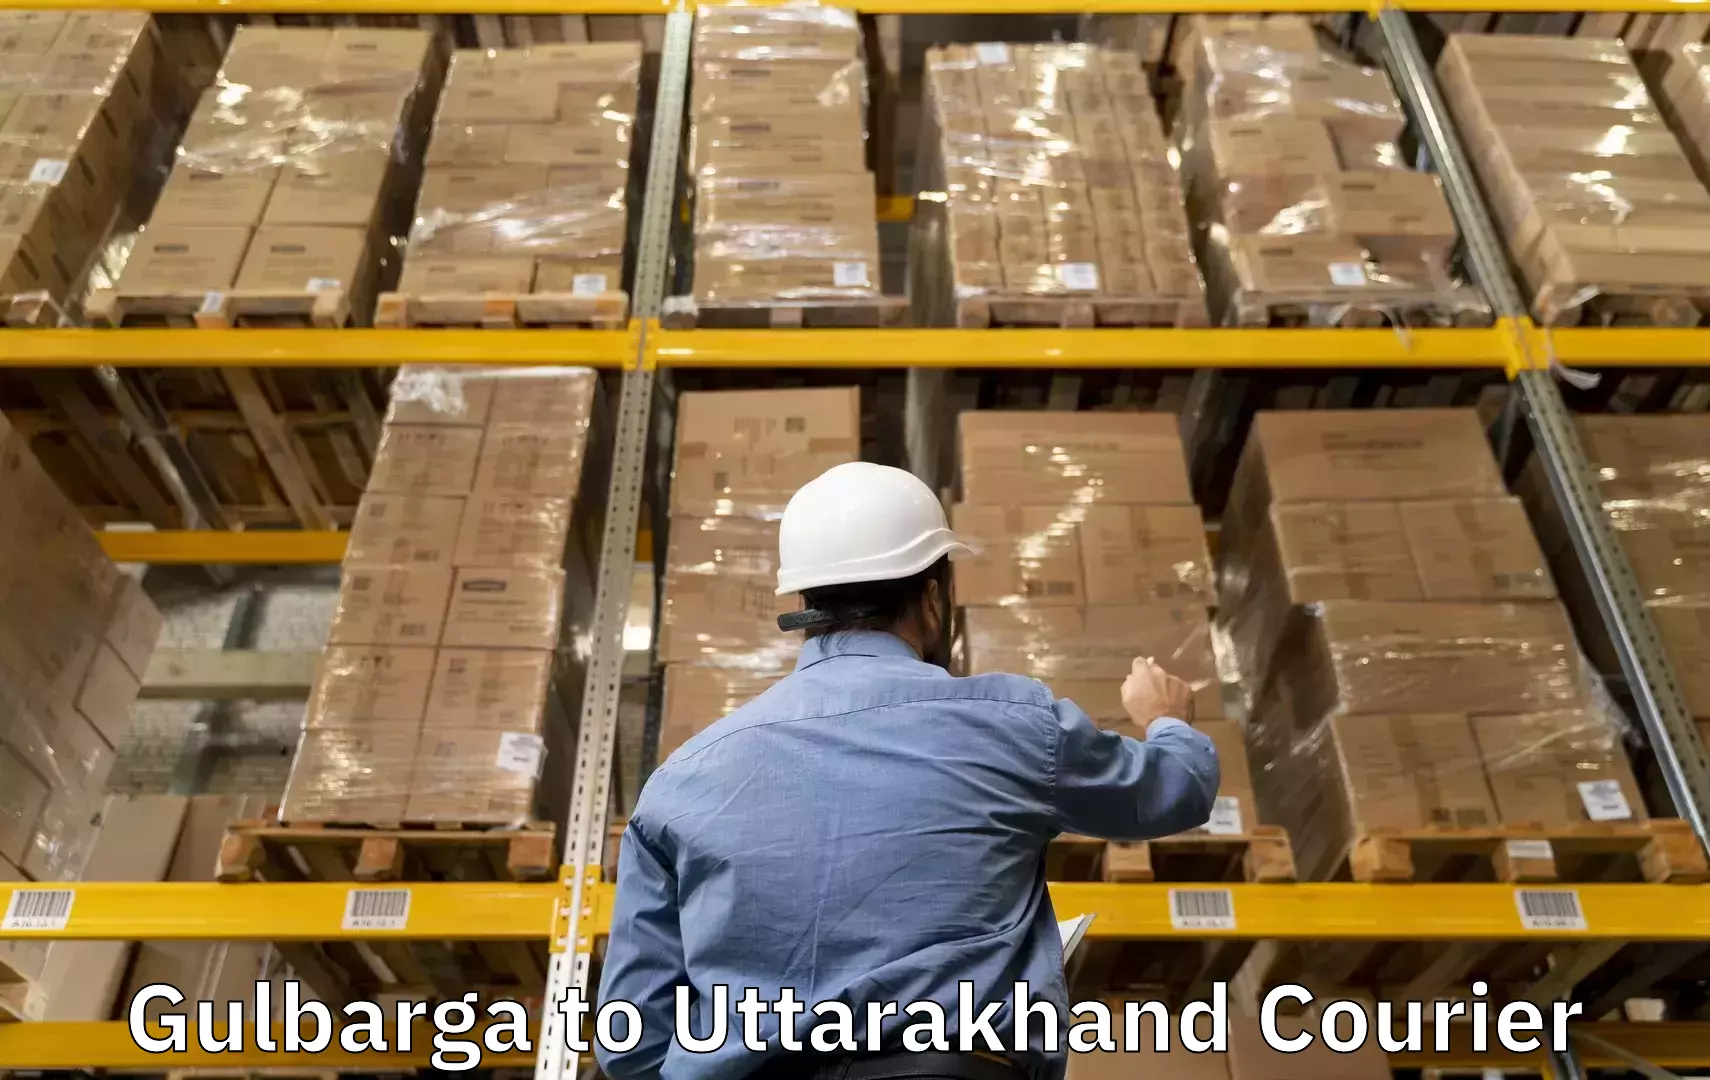 Luggage dispatch service Gulbarga to Uttarakhand